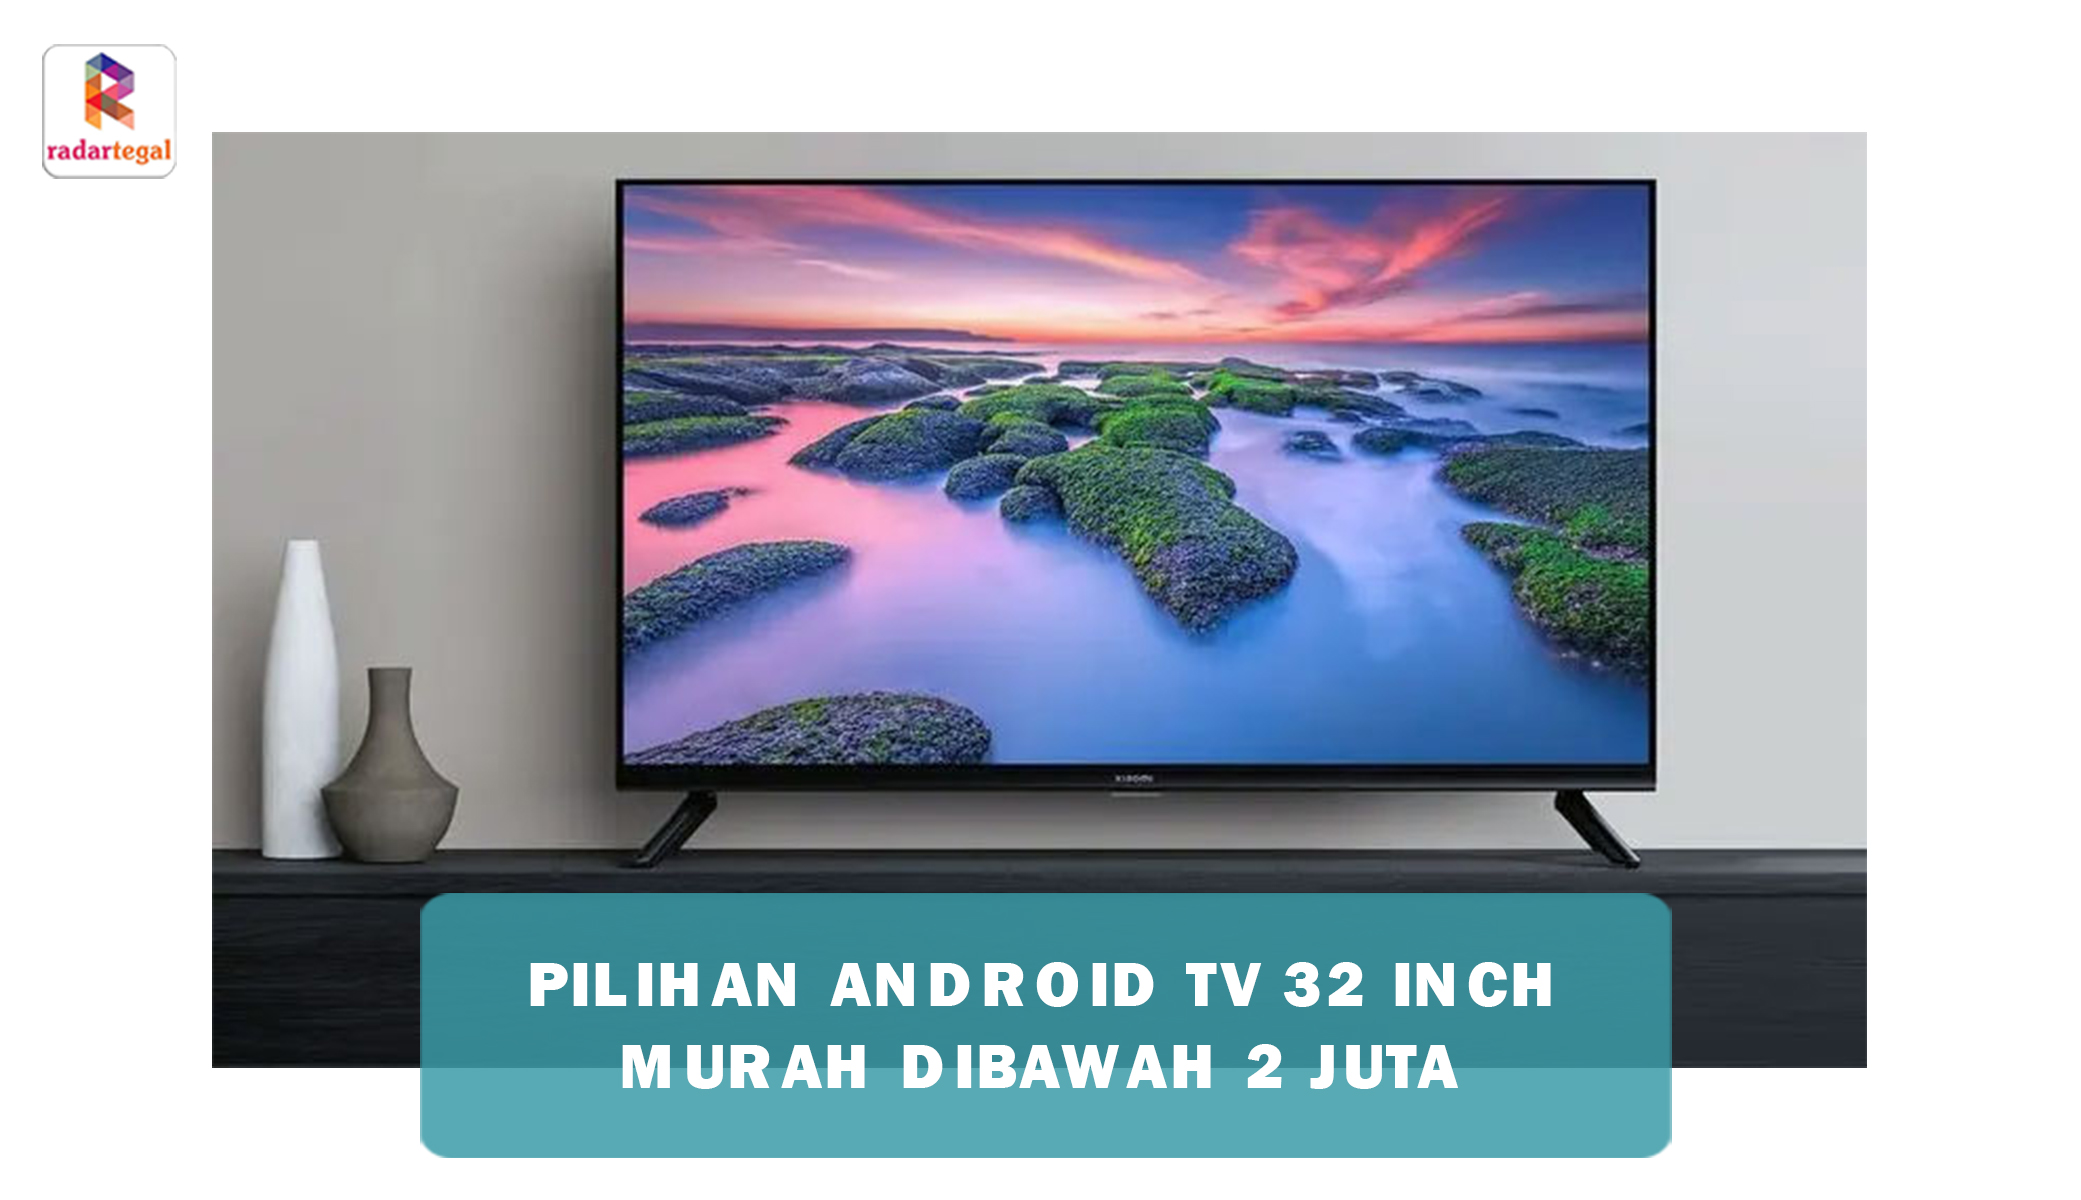 TV Android 32 Inch Murah Dibawah 2 Juta Saja Harganya, Panel Jernih Warnanya Ngejreng